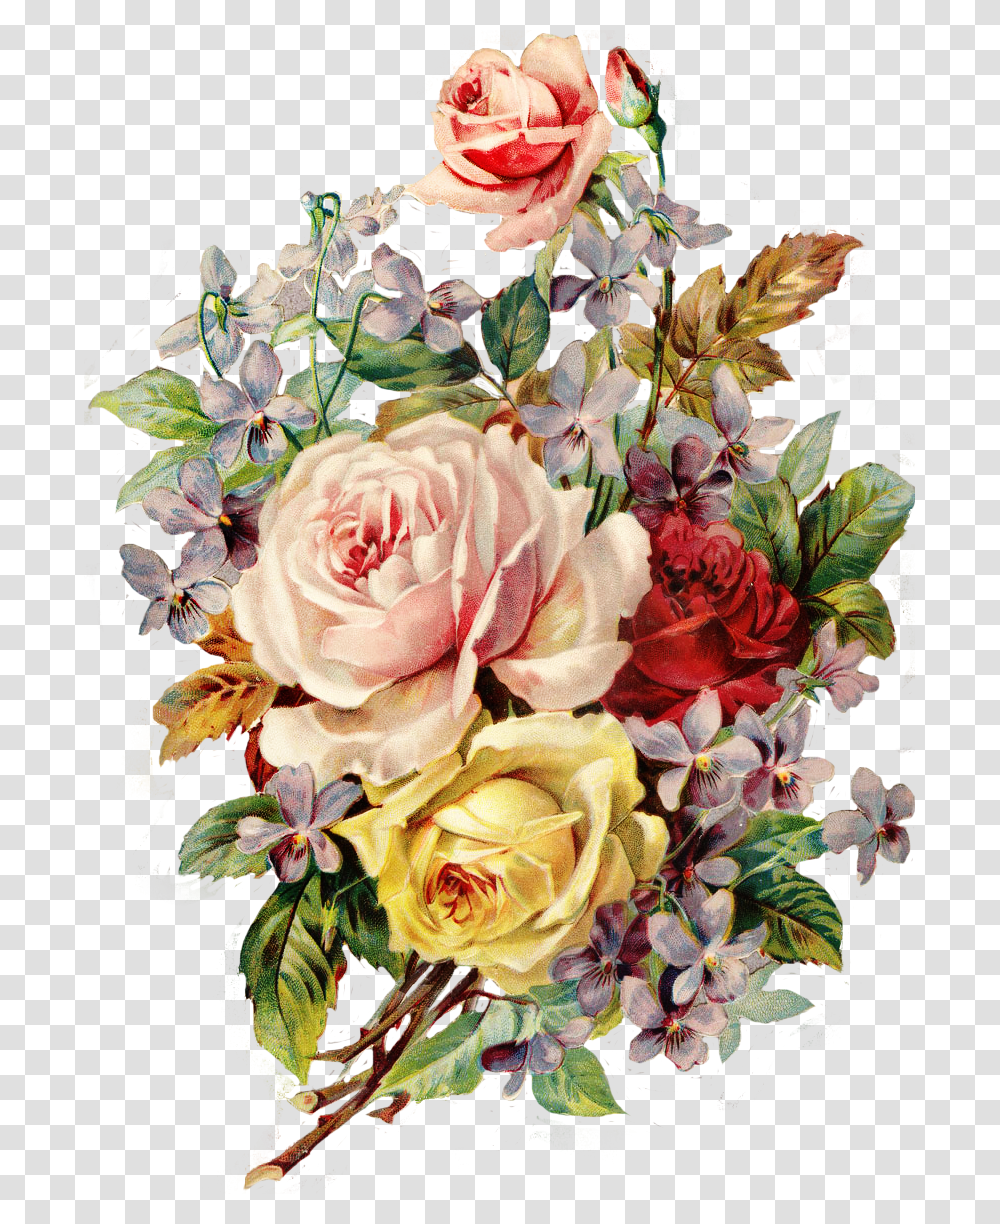 Download Vintage Flower Vintage Flowers Image Vintage Flower Background, Graphics, Art, Floral Design, Pattern Transparent Png